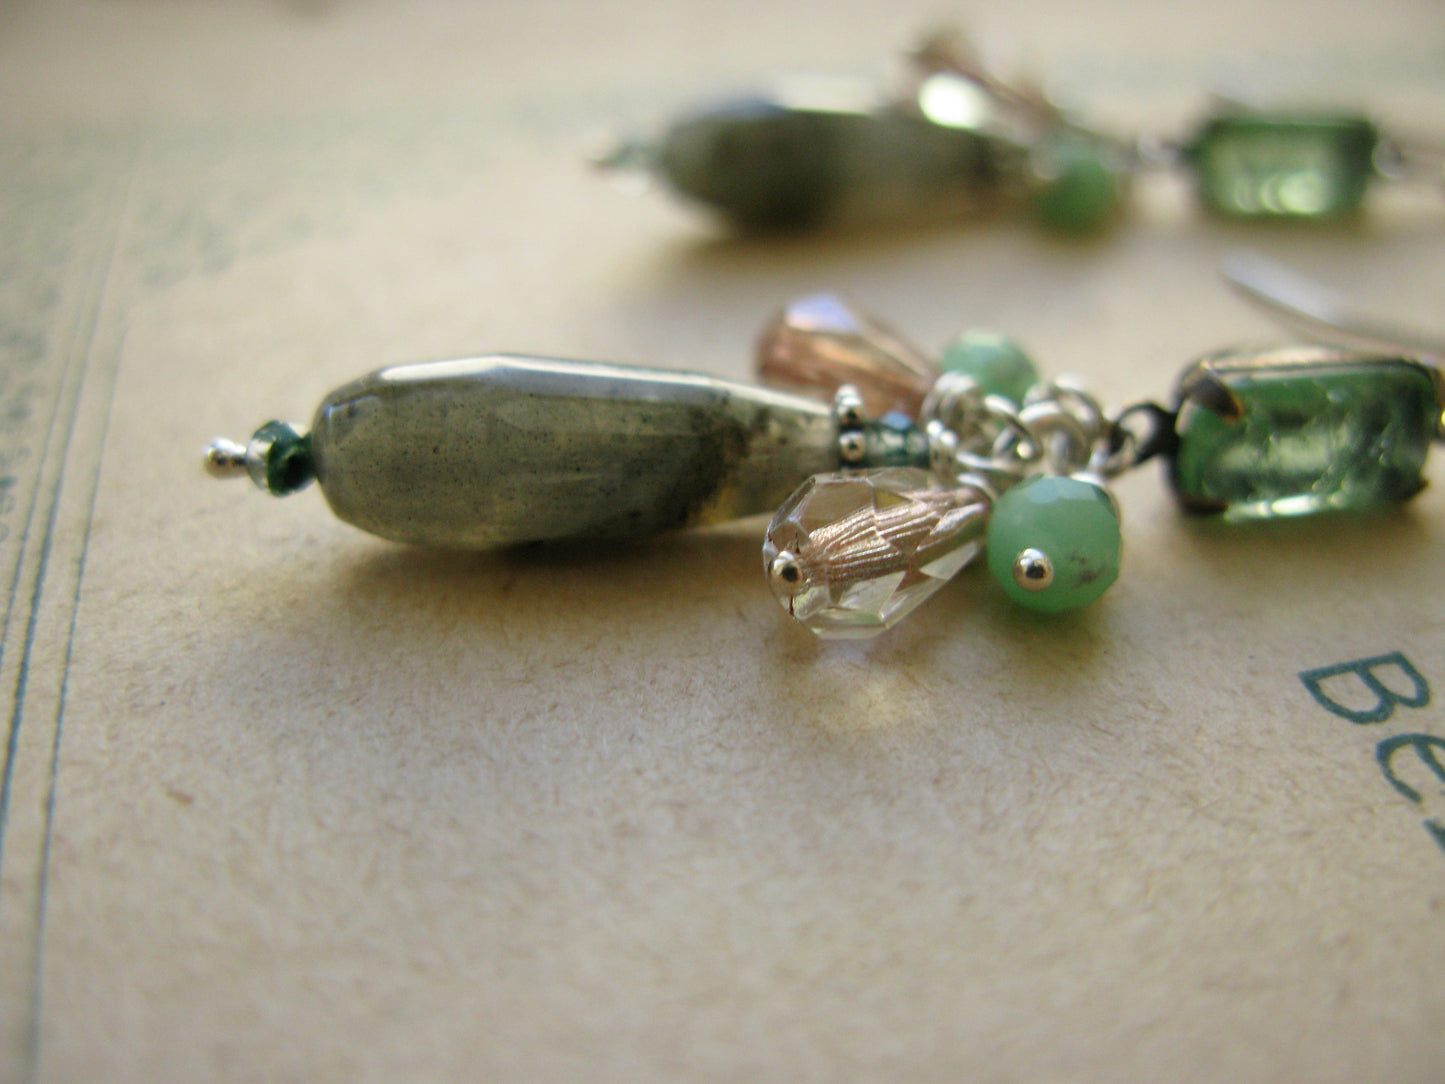 Magnolia midi earrings in green